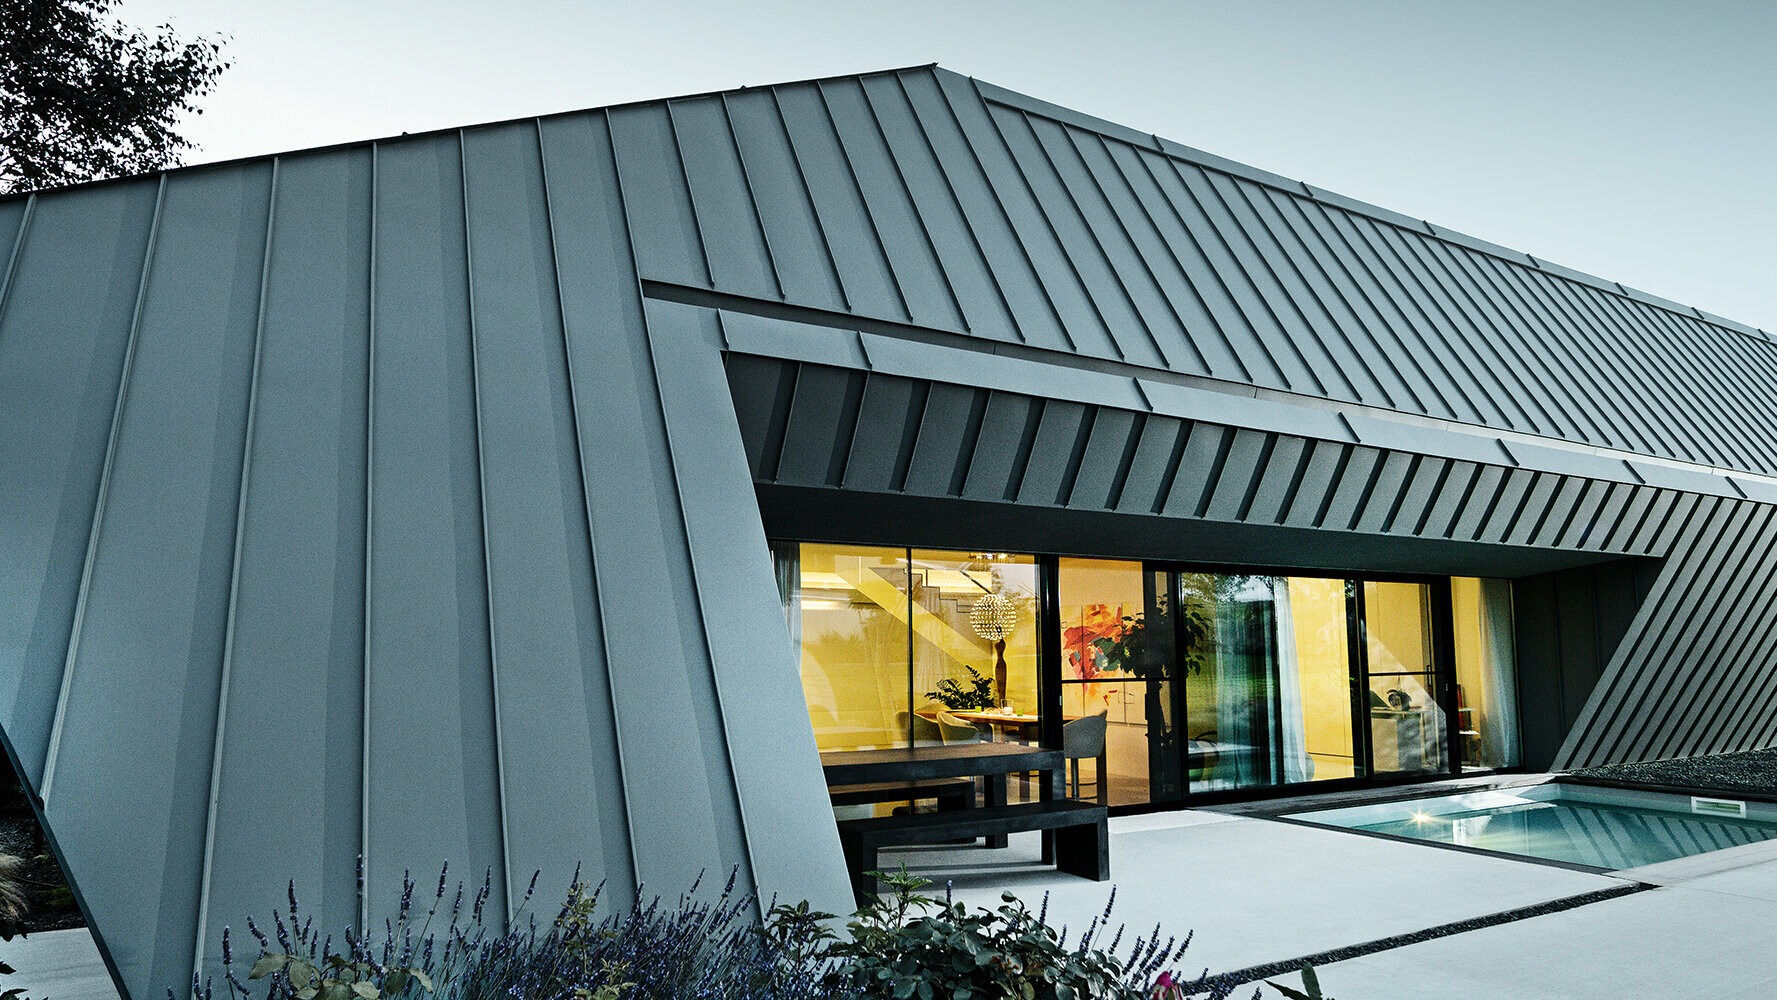 Casa unifamiliare di nuova costruzione con tetto e facciata in alluminio di PREFA nei colori P.10 antracite e P.10 grigio chiaro.